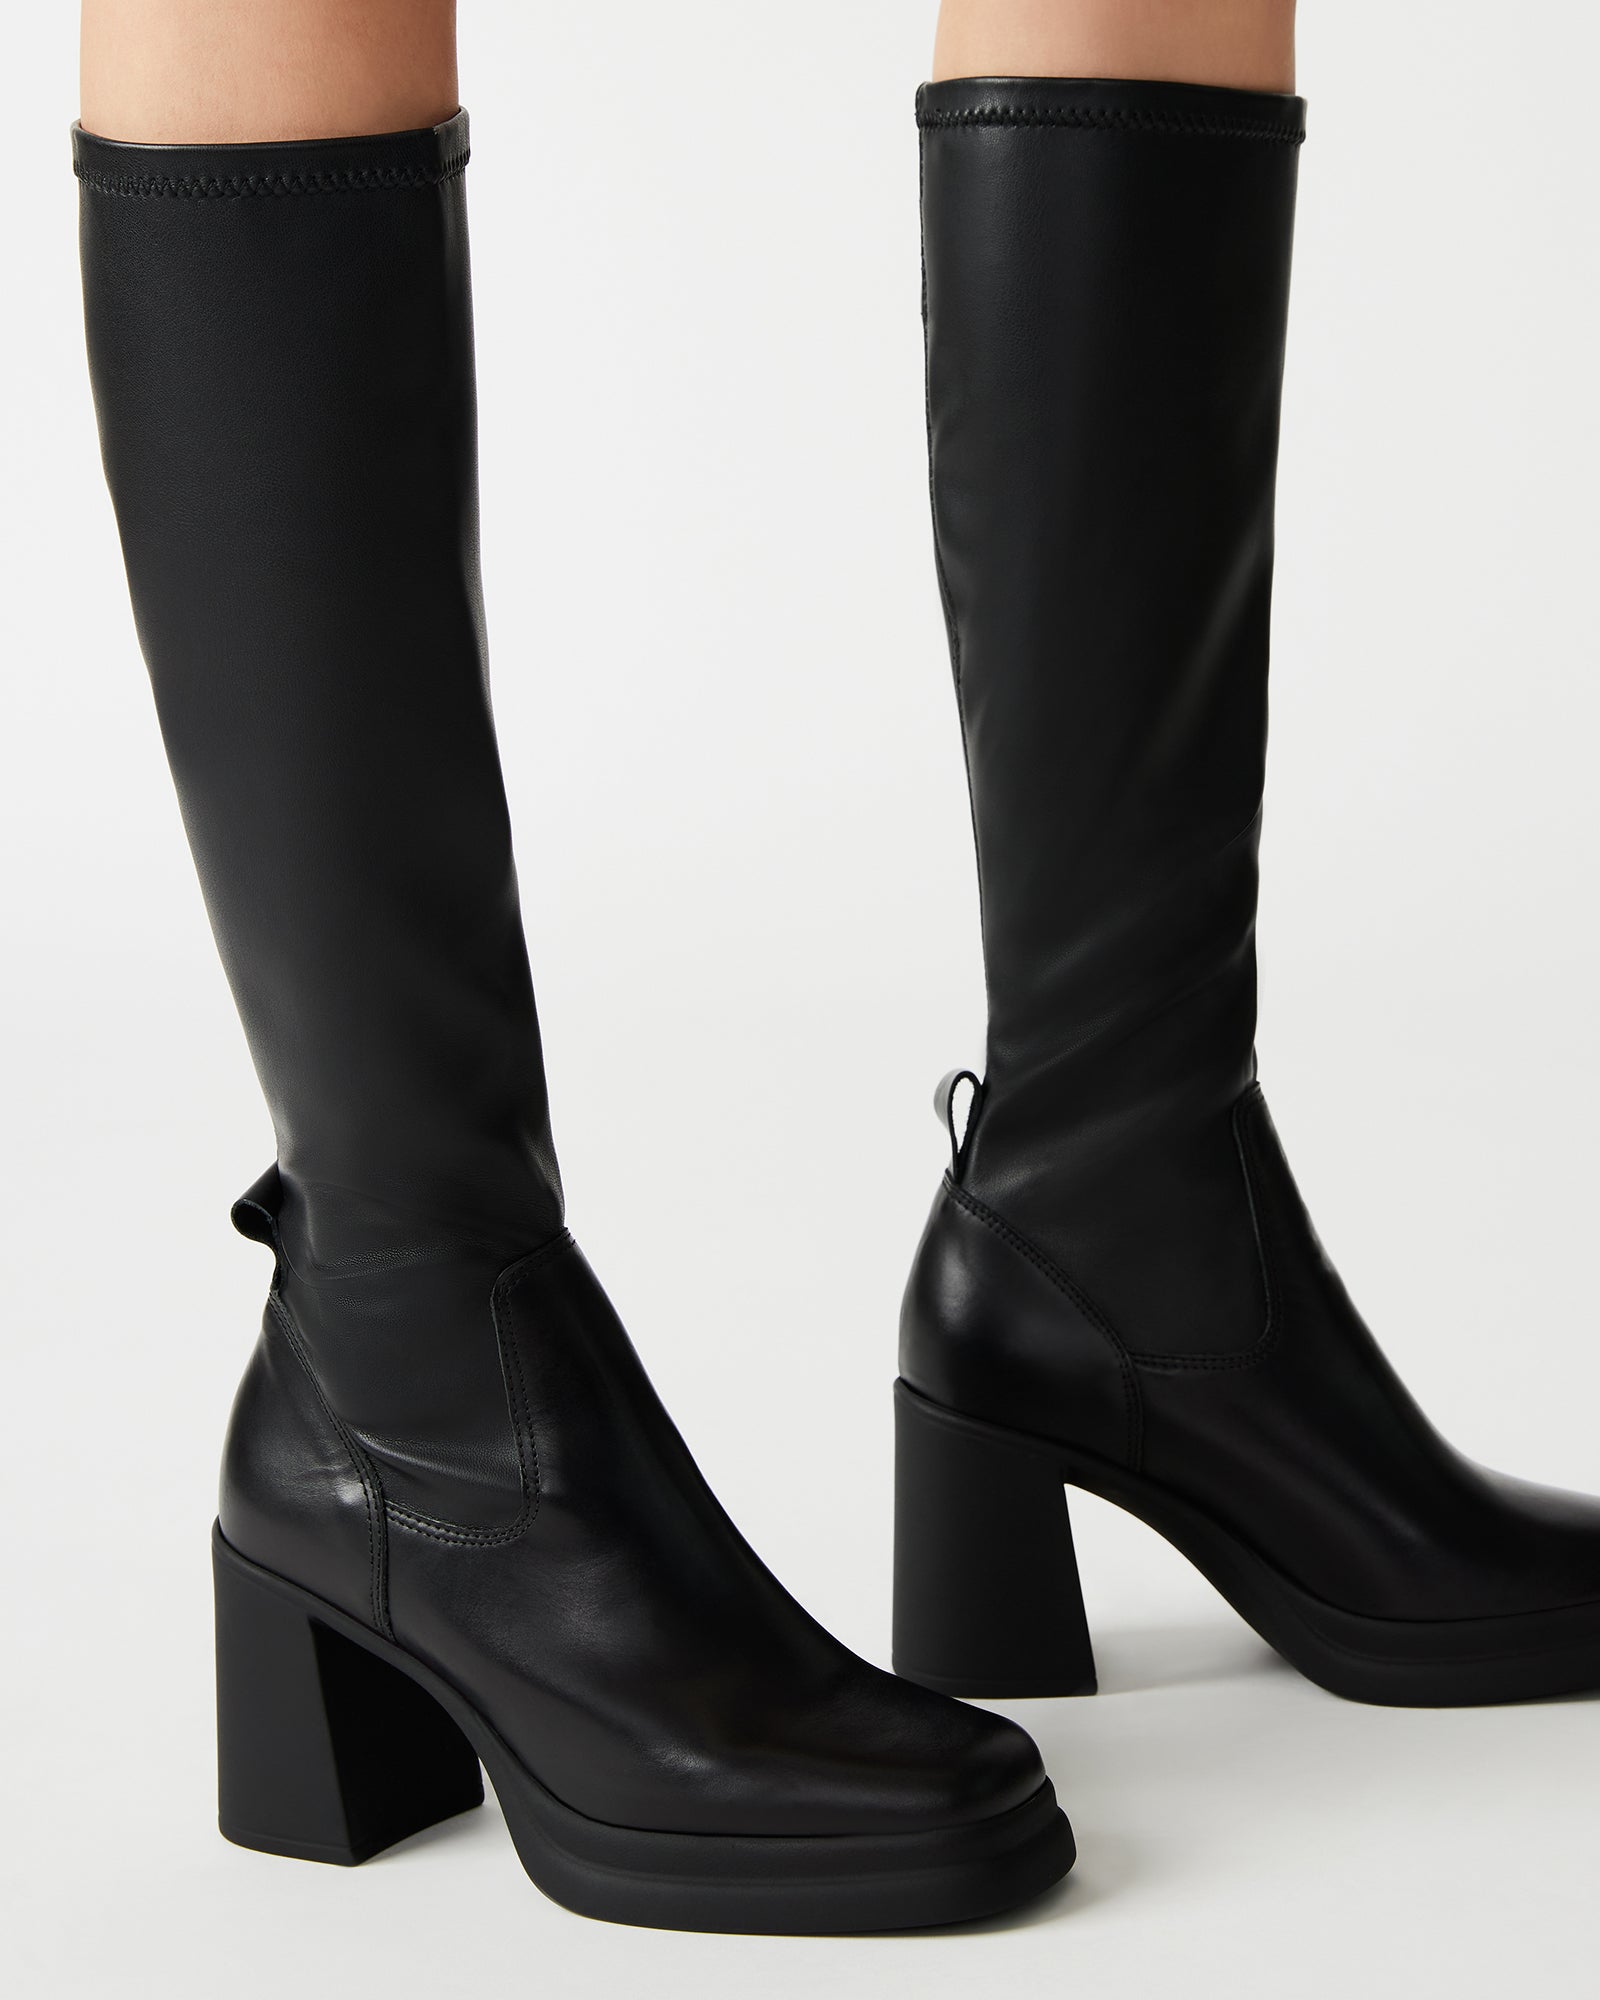 ZENOVIA Black Square Toe Knee High Boot | Women's Boots – Steve Madden